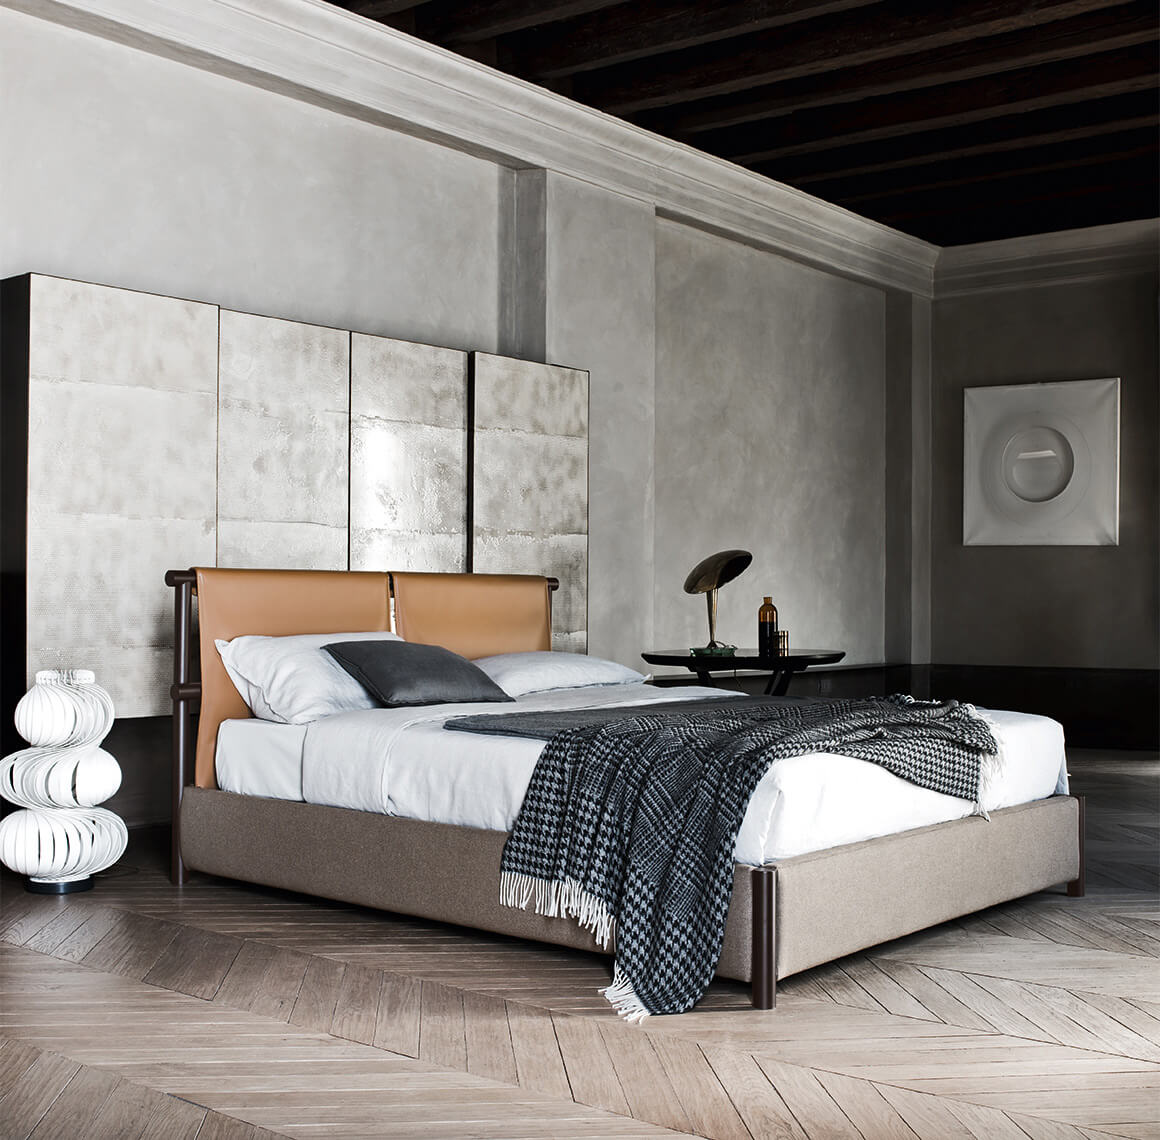 A Jetty ágy egyszerű formatervének és a meleg színeinek köszönhetően számos különböző stílusú bútordarabbal is jól kombinálható.